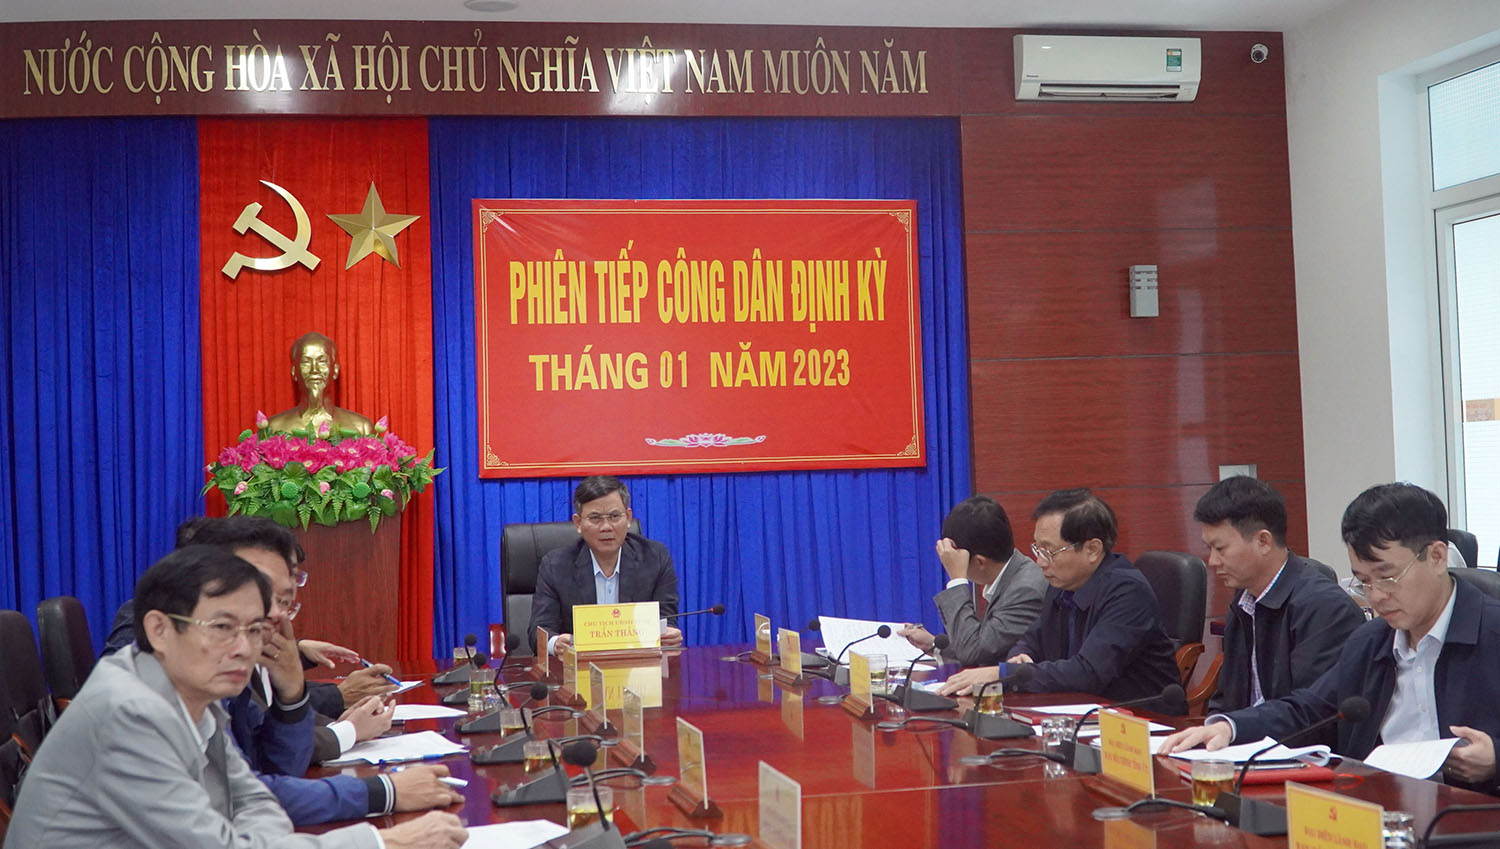 Toàn cảnh phiên tiếp công dân của đồng chí Chủ tịch UBND tỉnh Trần Thắng